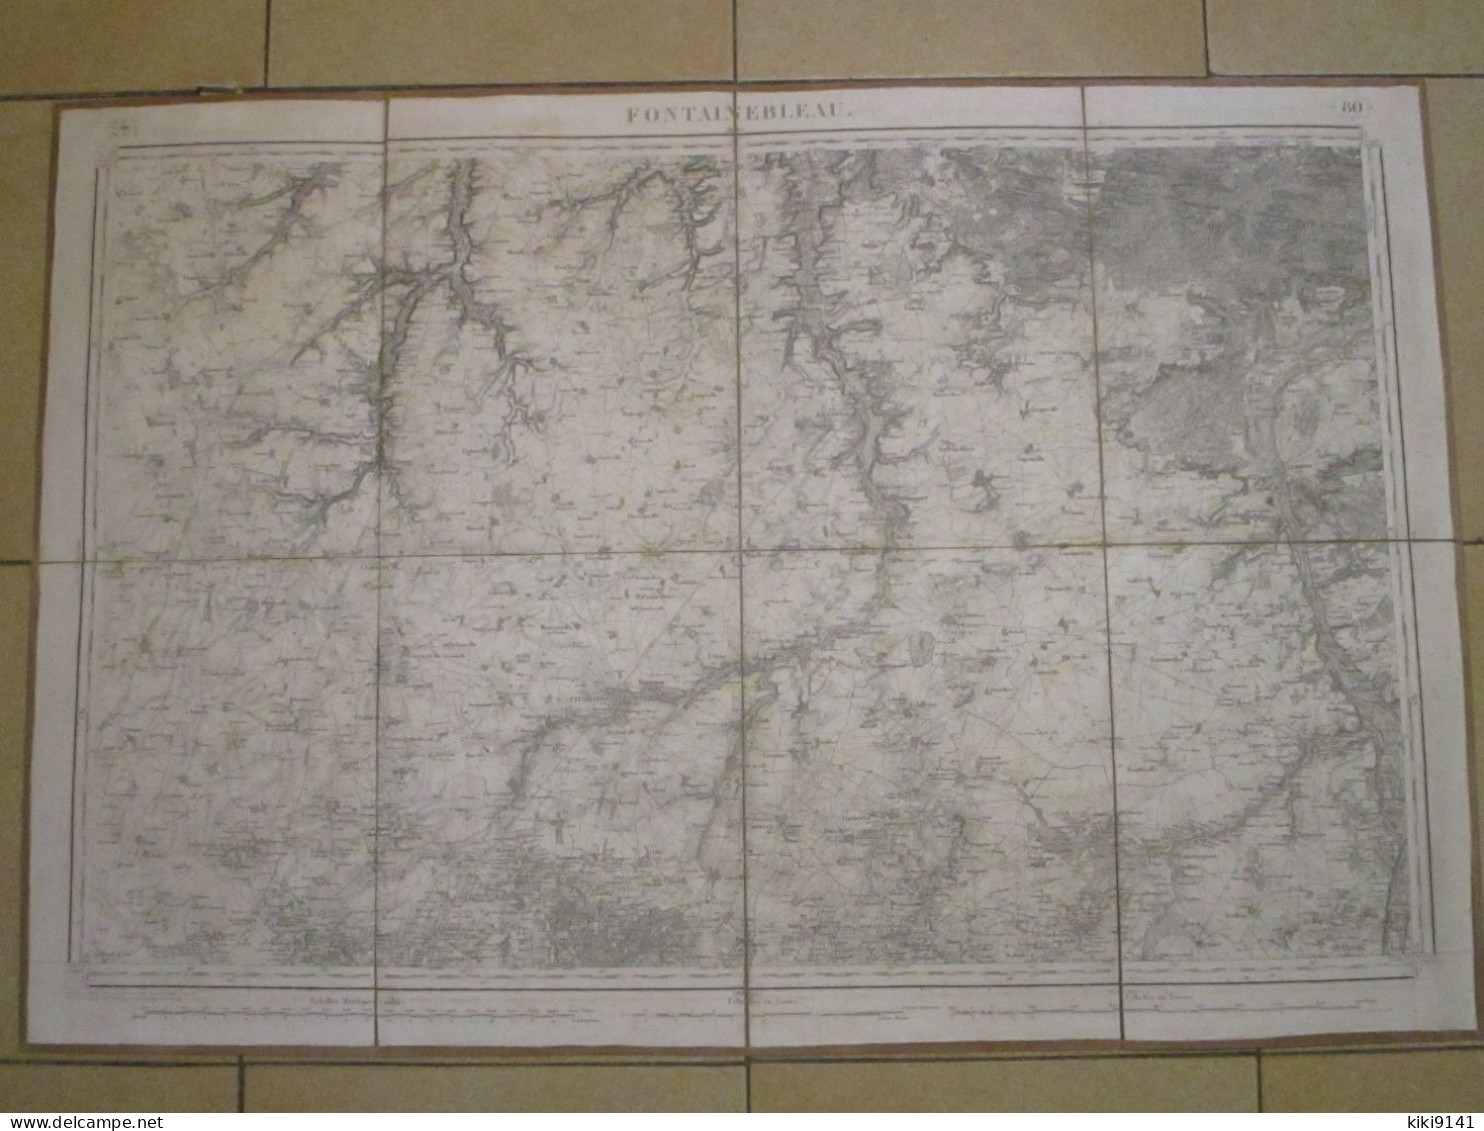 FONTAINEBLEAU - Carte D'État-Major Au 1/80.000ème - Topographische Karten